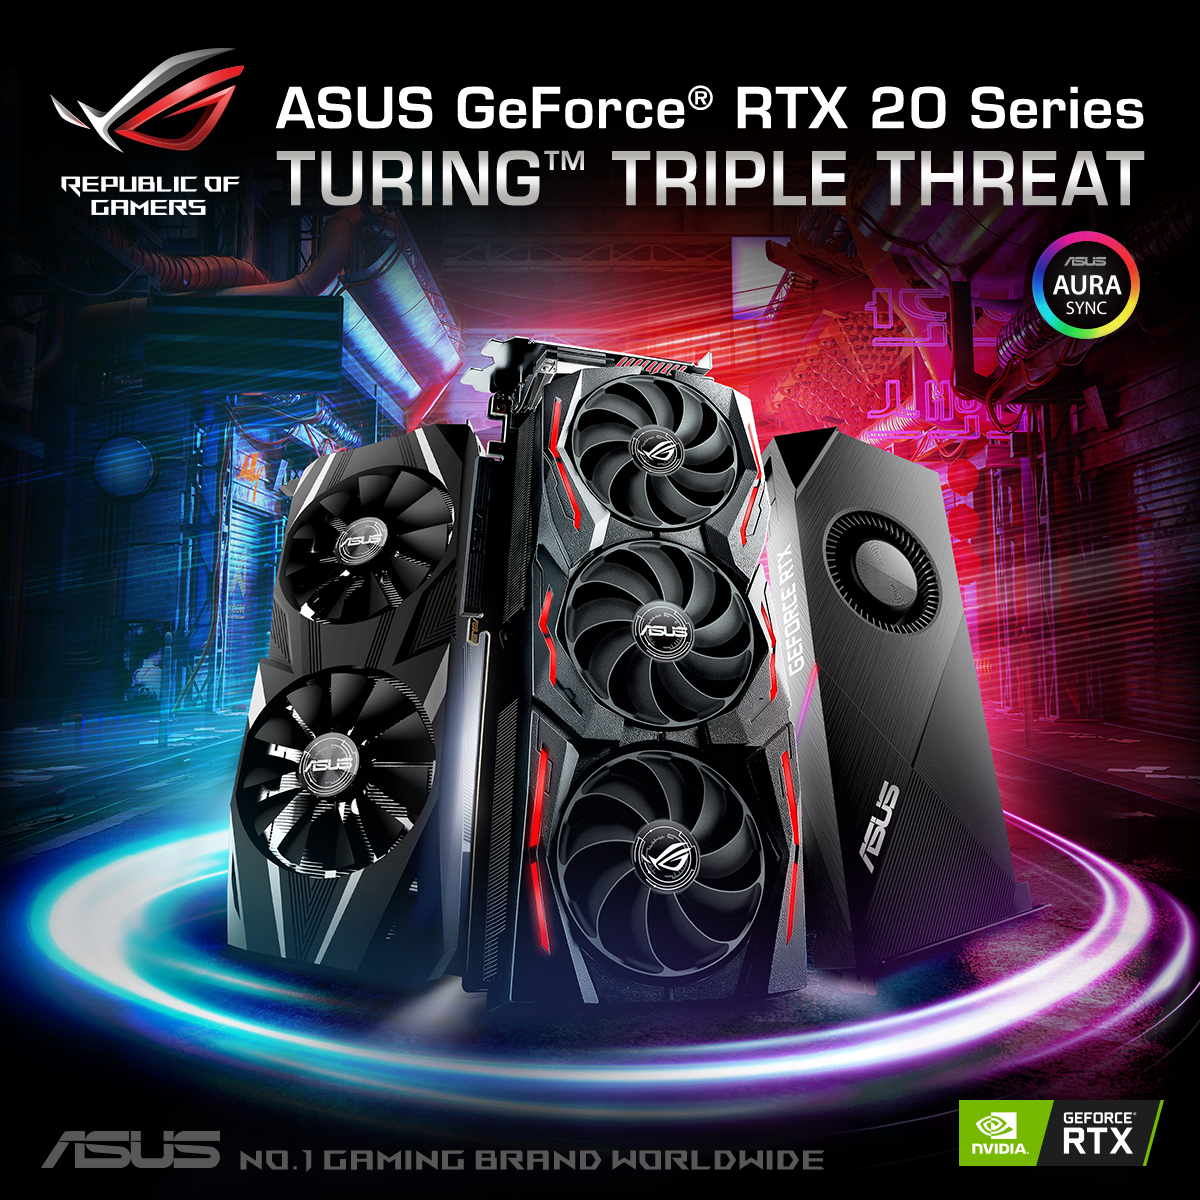 ASUS công bố phiên bản card màn hình gaming mới ROG Strix, Turbo và Dual sử dụng Geforce RTX 2080 Ti và 2080